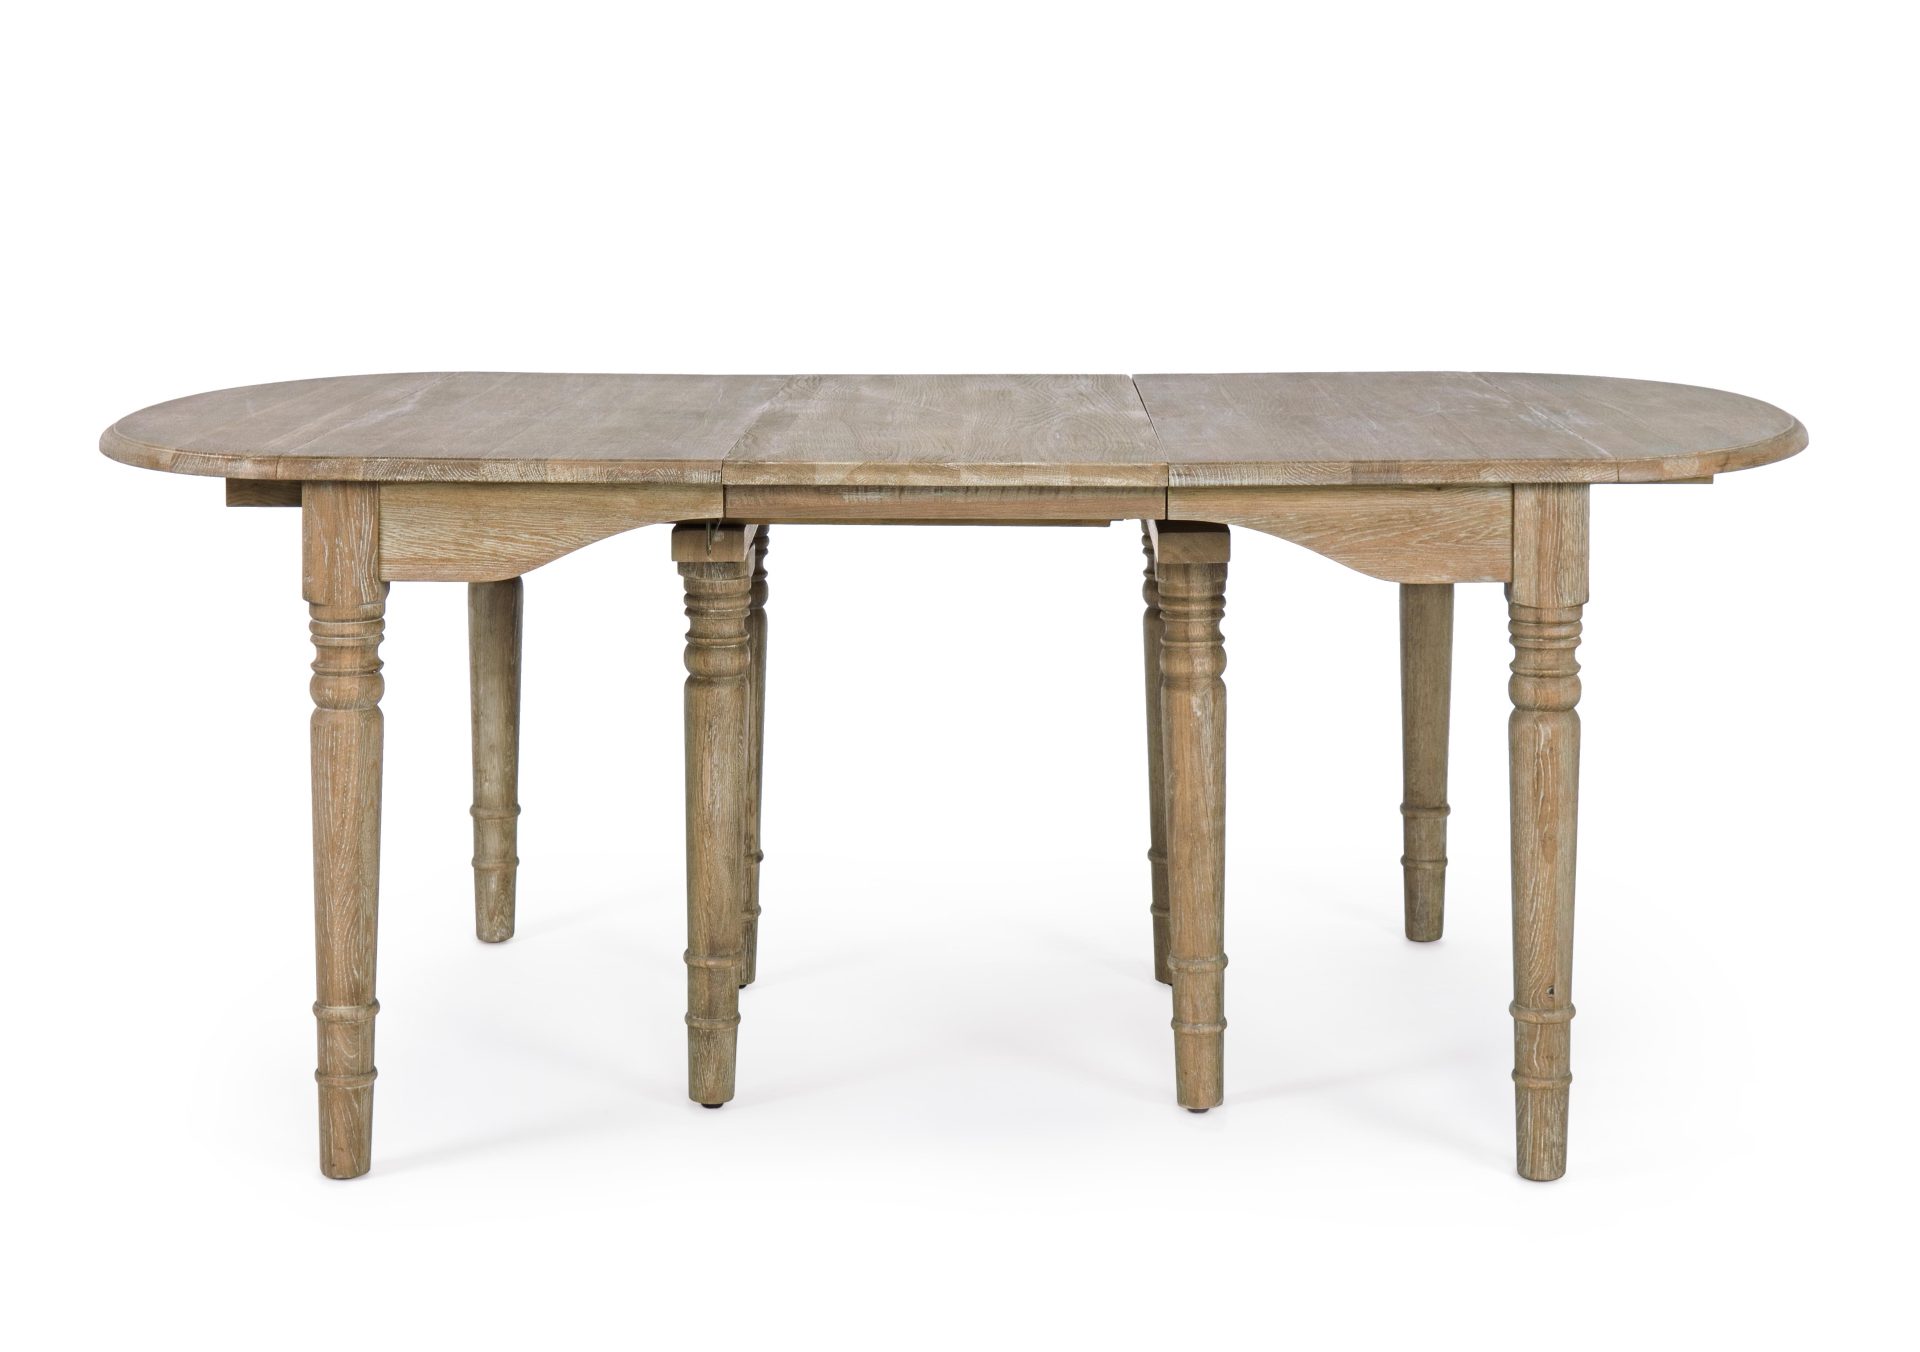 Der Esstisch Bedford überzeugt mit seinem klassischem Design. Gefertigt wurde er aus Eichenholz, welches einen natürlichen Farbton besitzt. Der Tisch ist ausziehbar von einer Länge von 152 cm auf 382 cm.